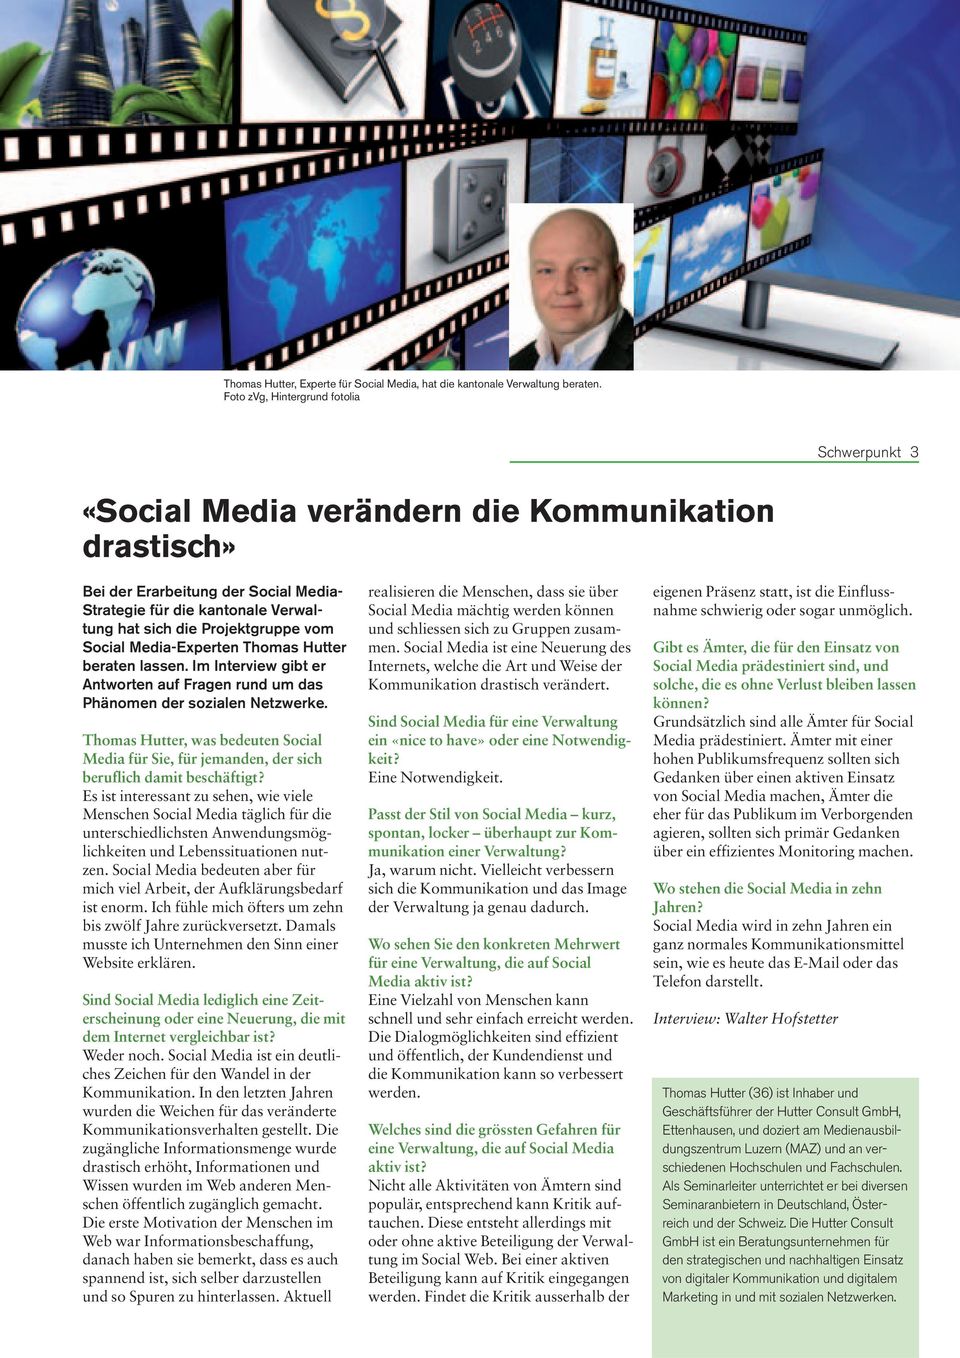 Projektgruppe vom Social Media-Experten Thomas Hutter beraten lassen. Im Interview gibt er Antworten auf Fragen rund um das Phänomen der sozialen Netzwerke.